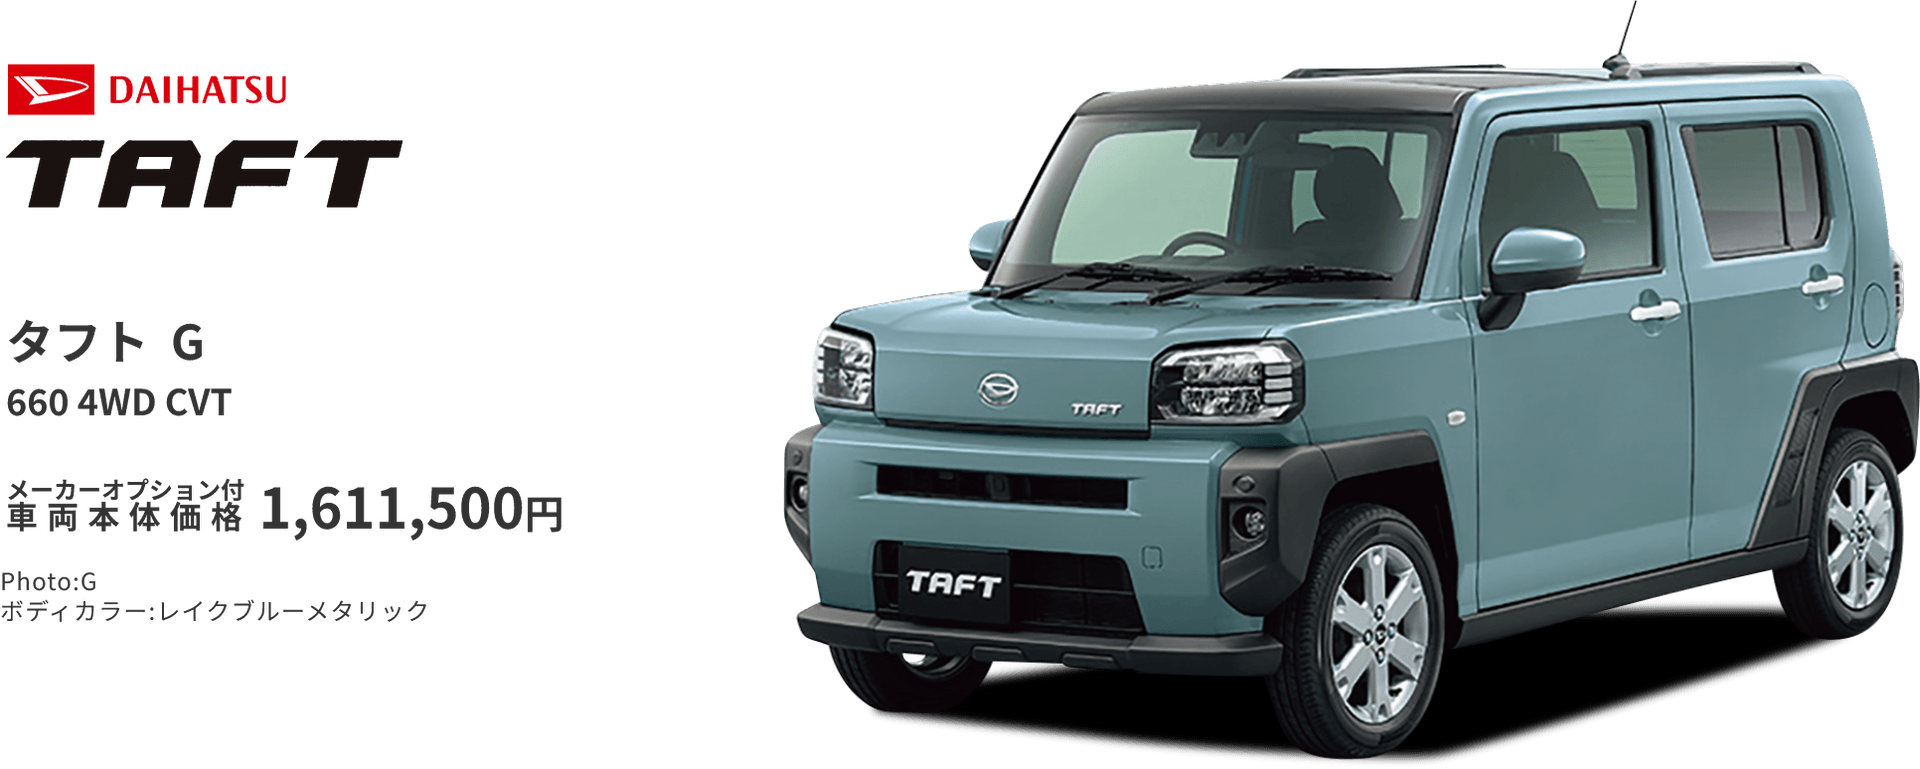 タフト D 660 4WD CVT メーカーオプション付車両本体価格1,611,500円